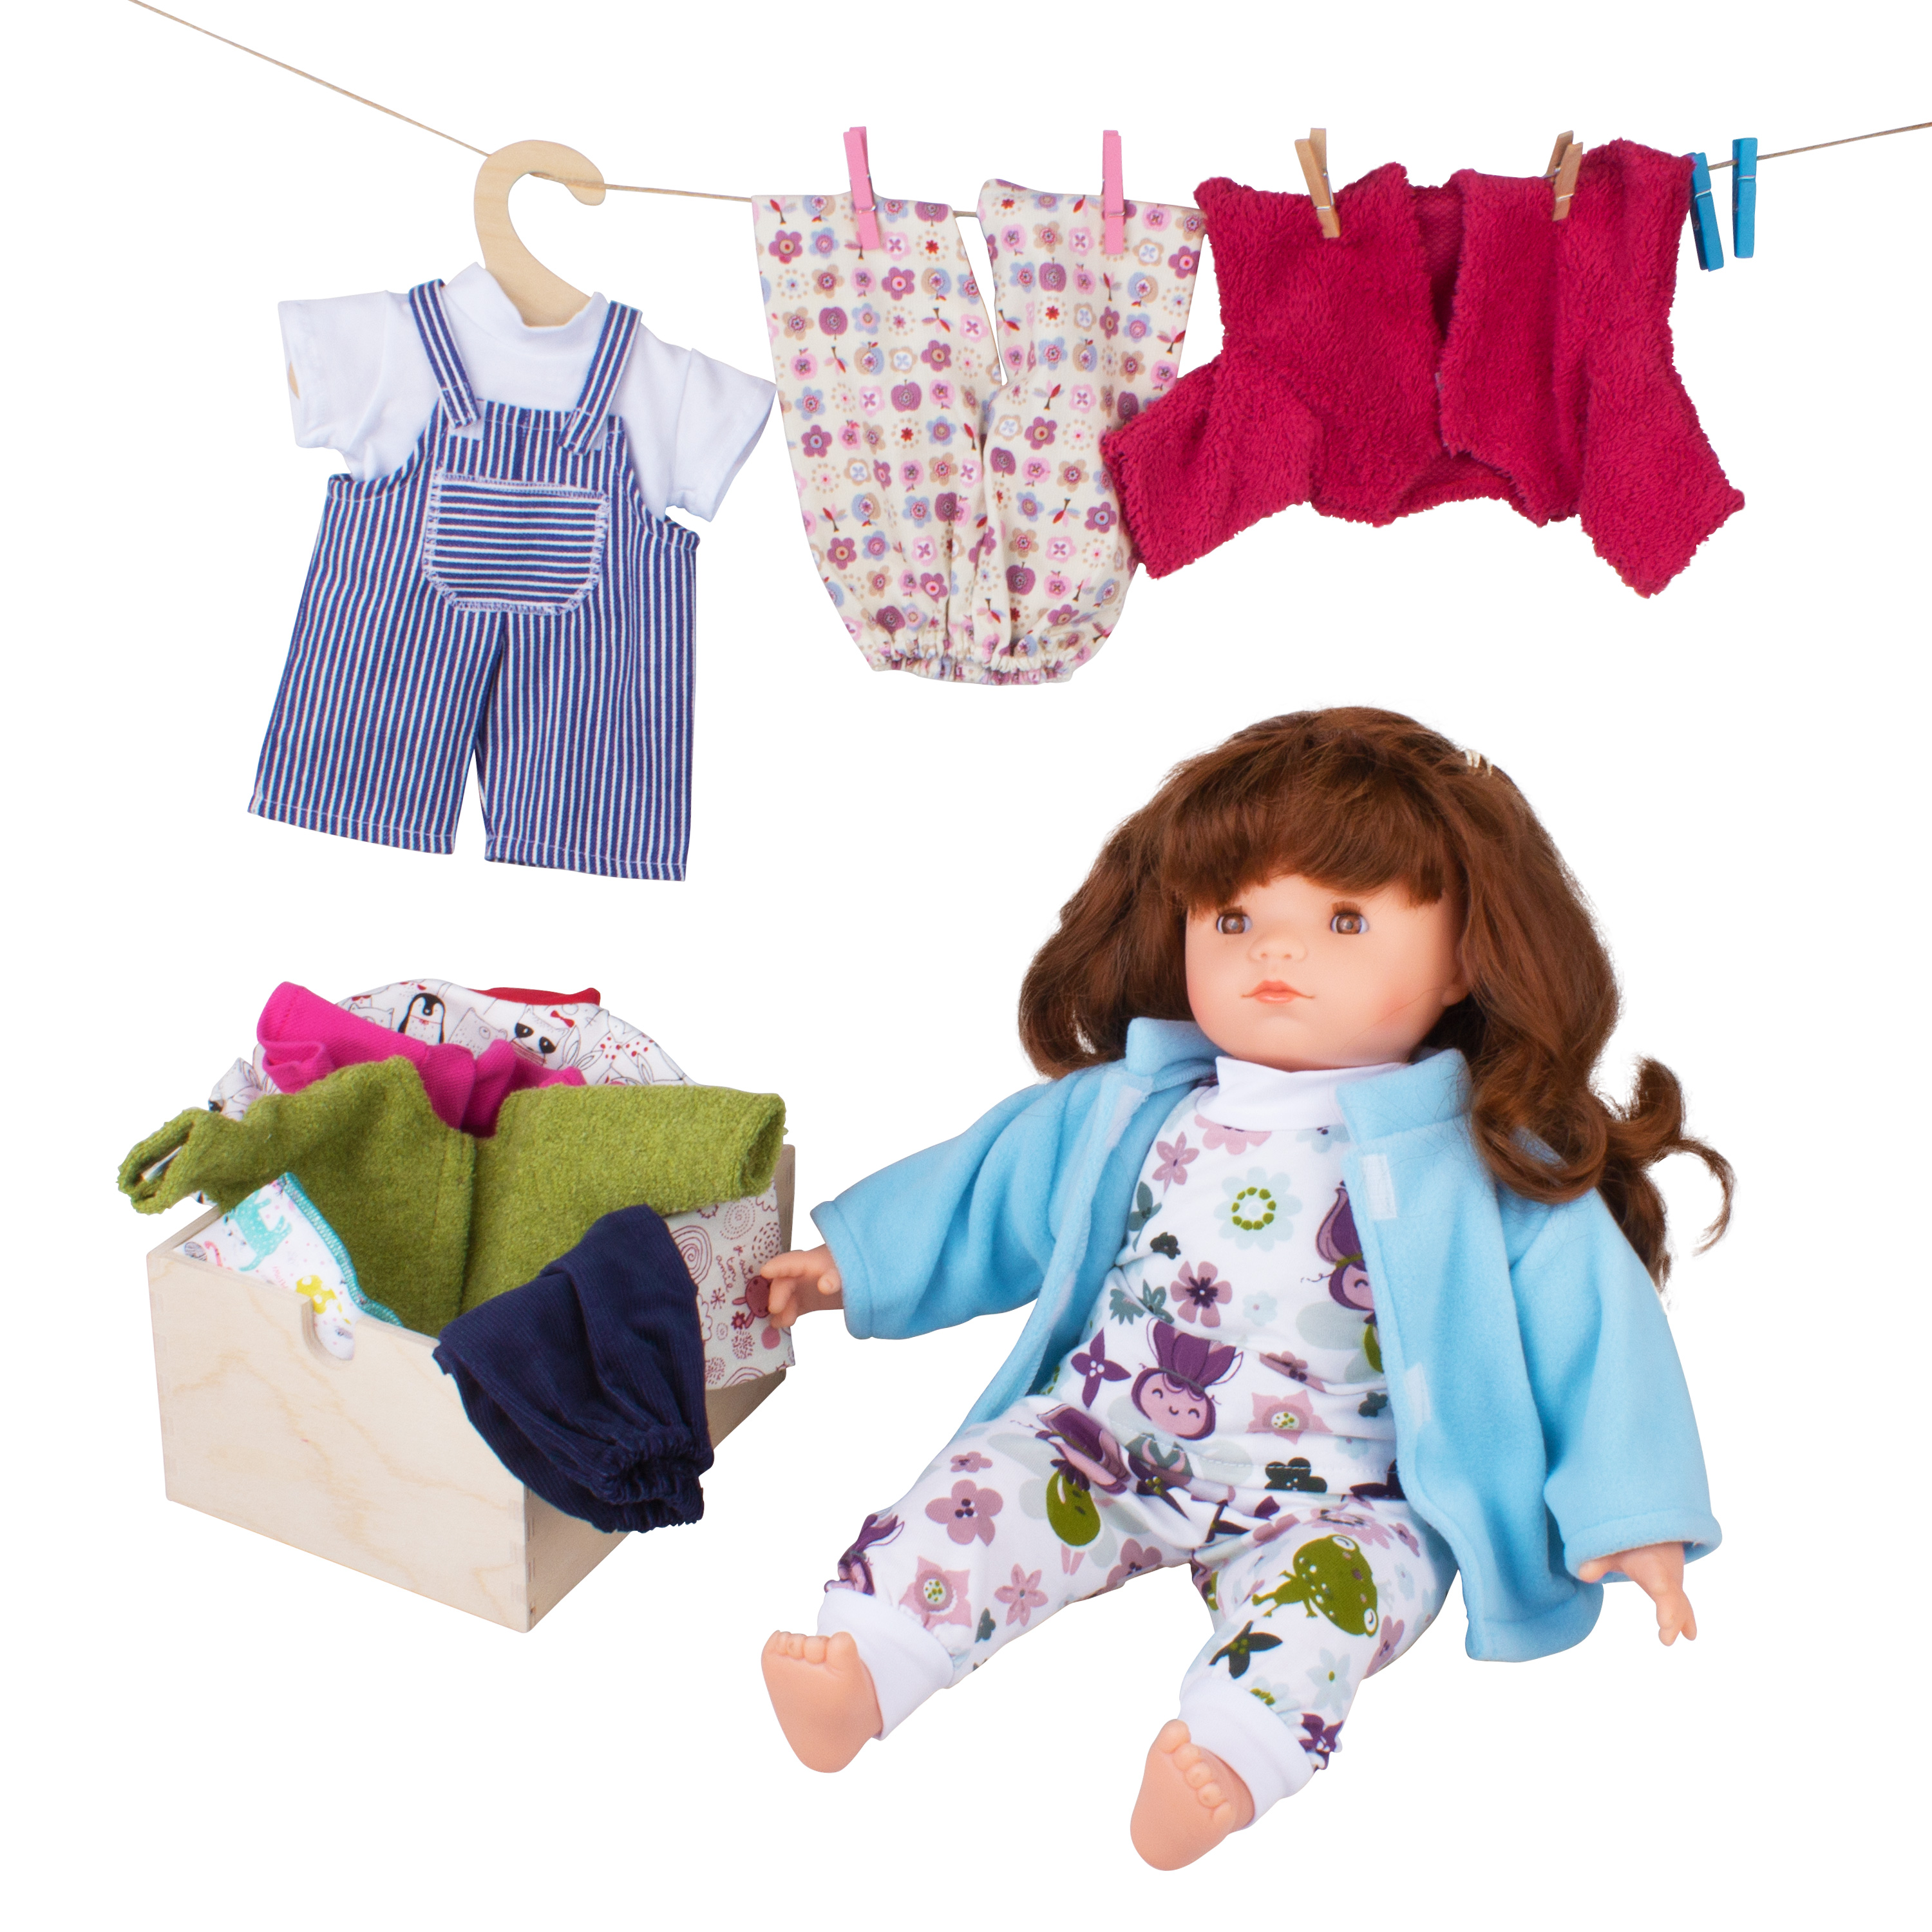 Sommerkleidung für Puppen in der Größe von 28-32